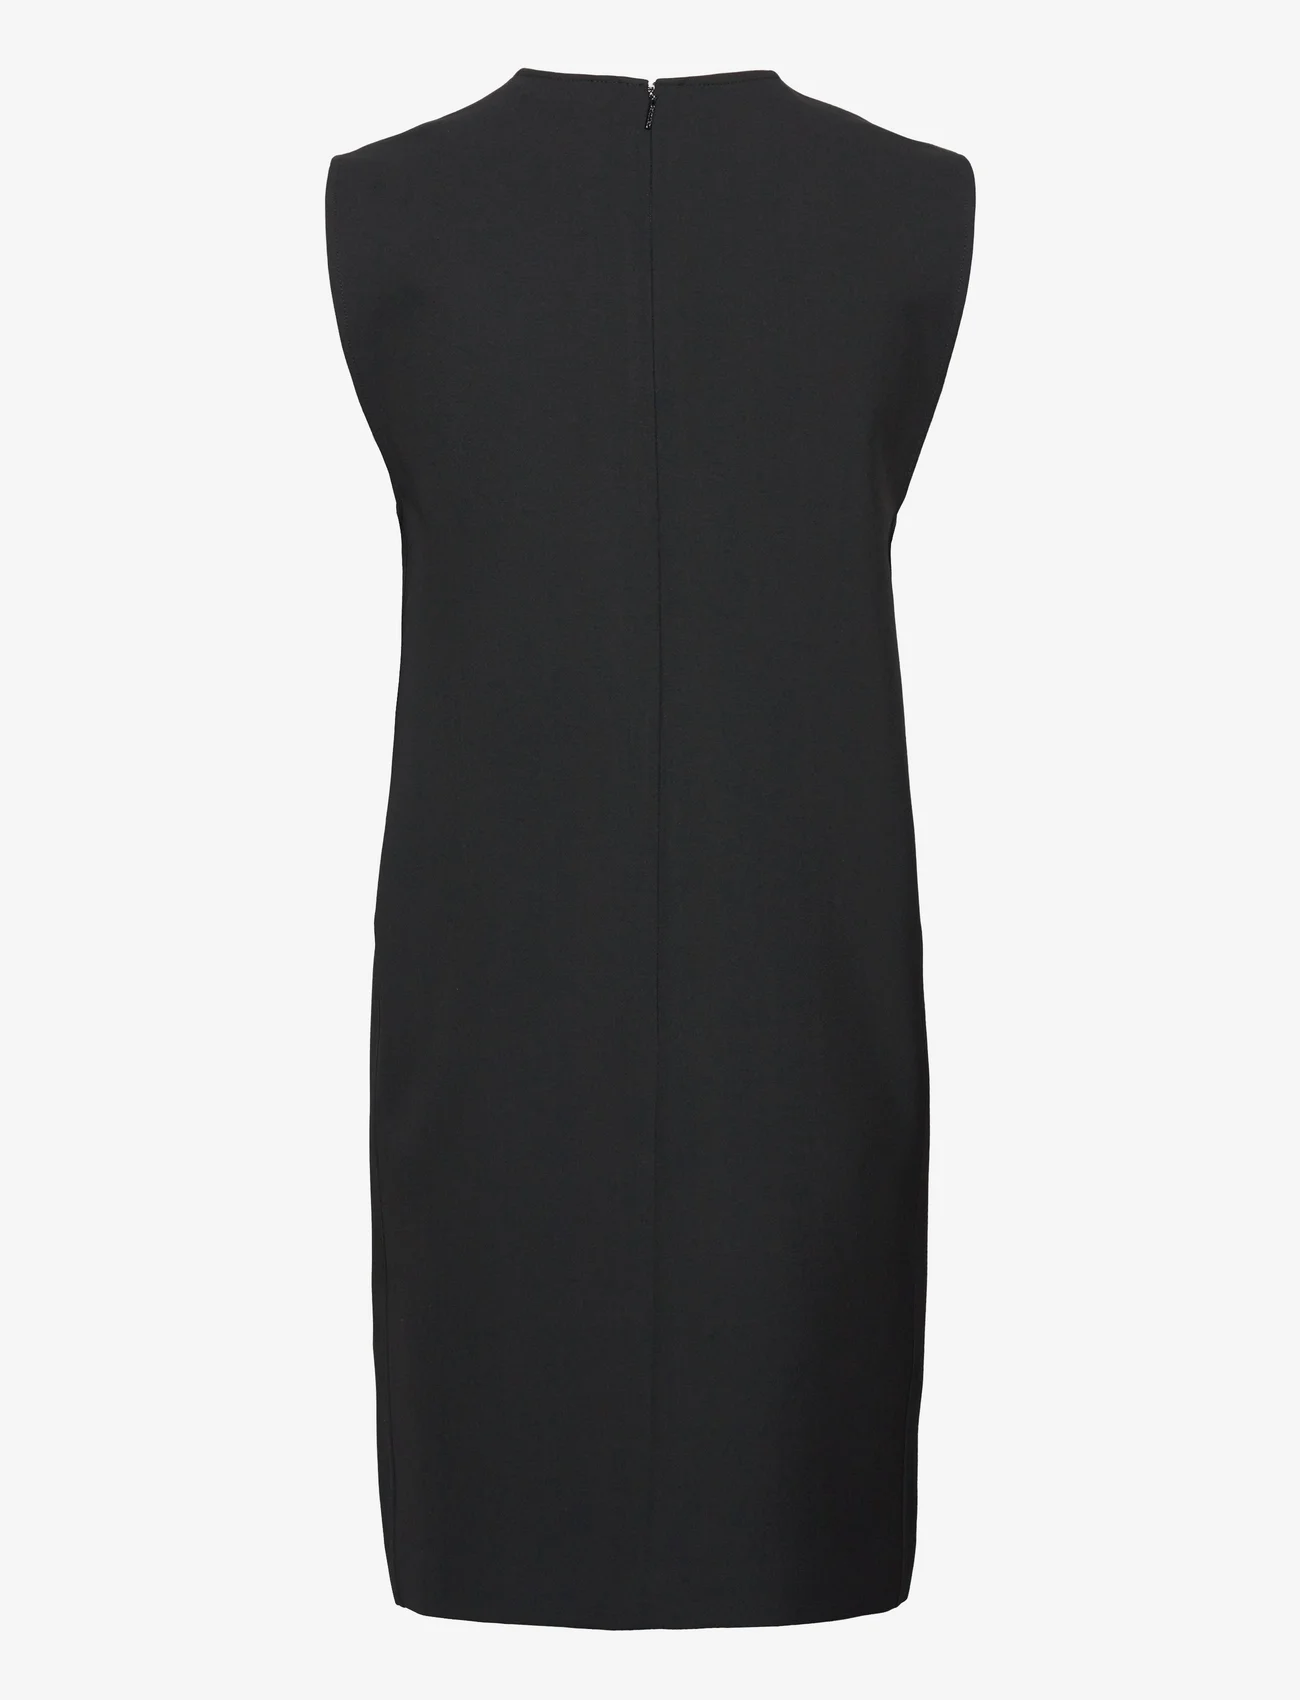 Calvin Klein - HEAVY VISCOSE NS SHIFT DRESS - midiklänningar - ck black - 1